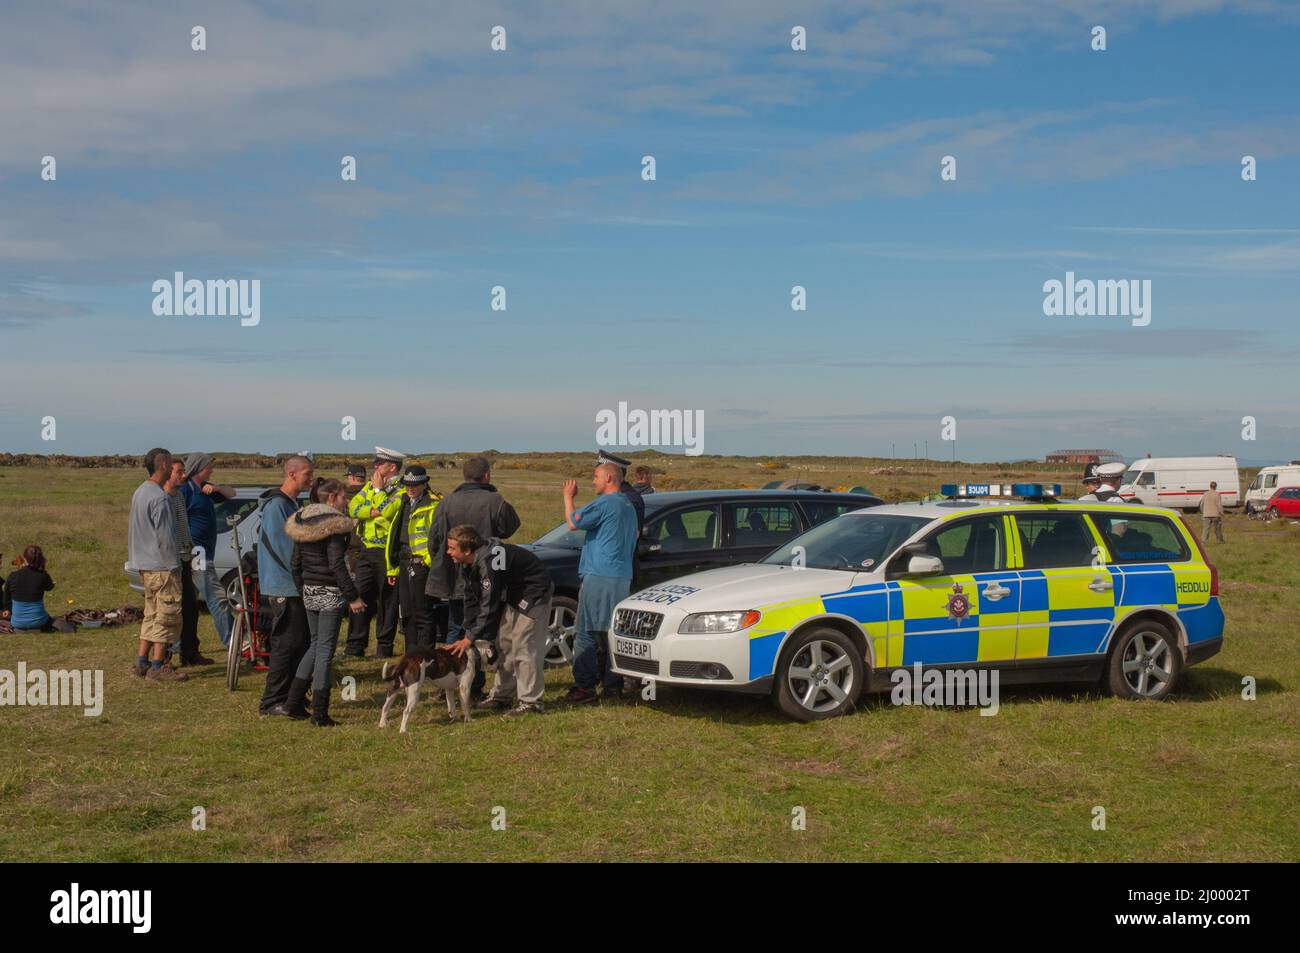 Polizia di fronte a ravers, rave illegale, Dale Airfield, maggio 2010, Pembrokeshire, Galles, Regno Unito, Europa Foto Stock